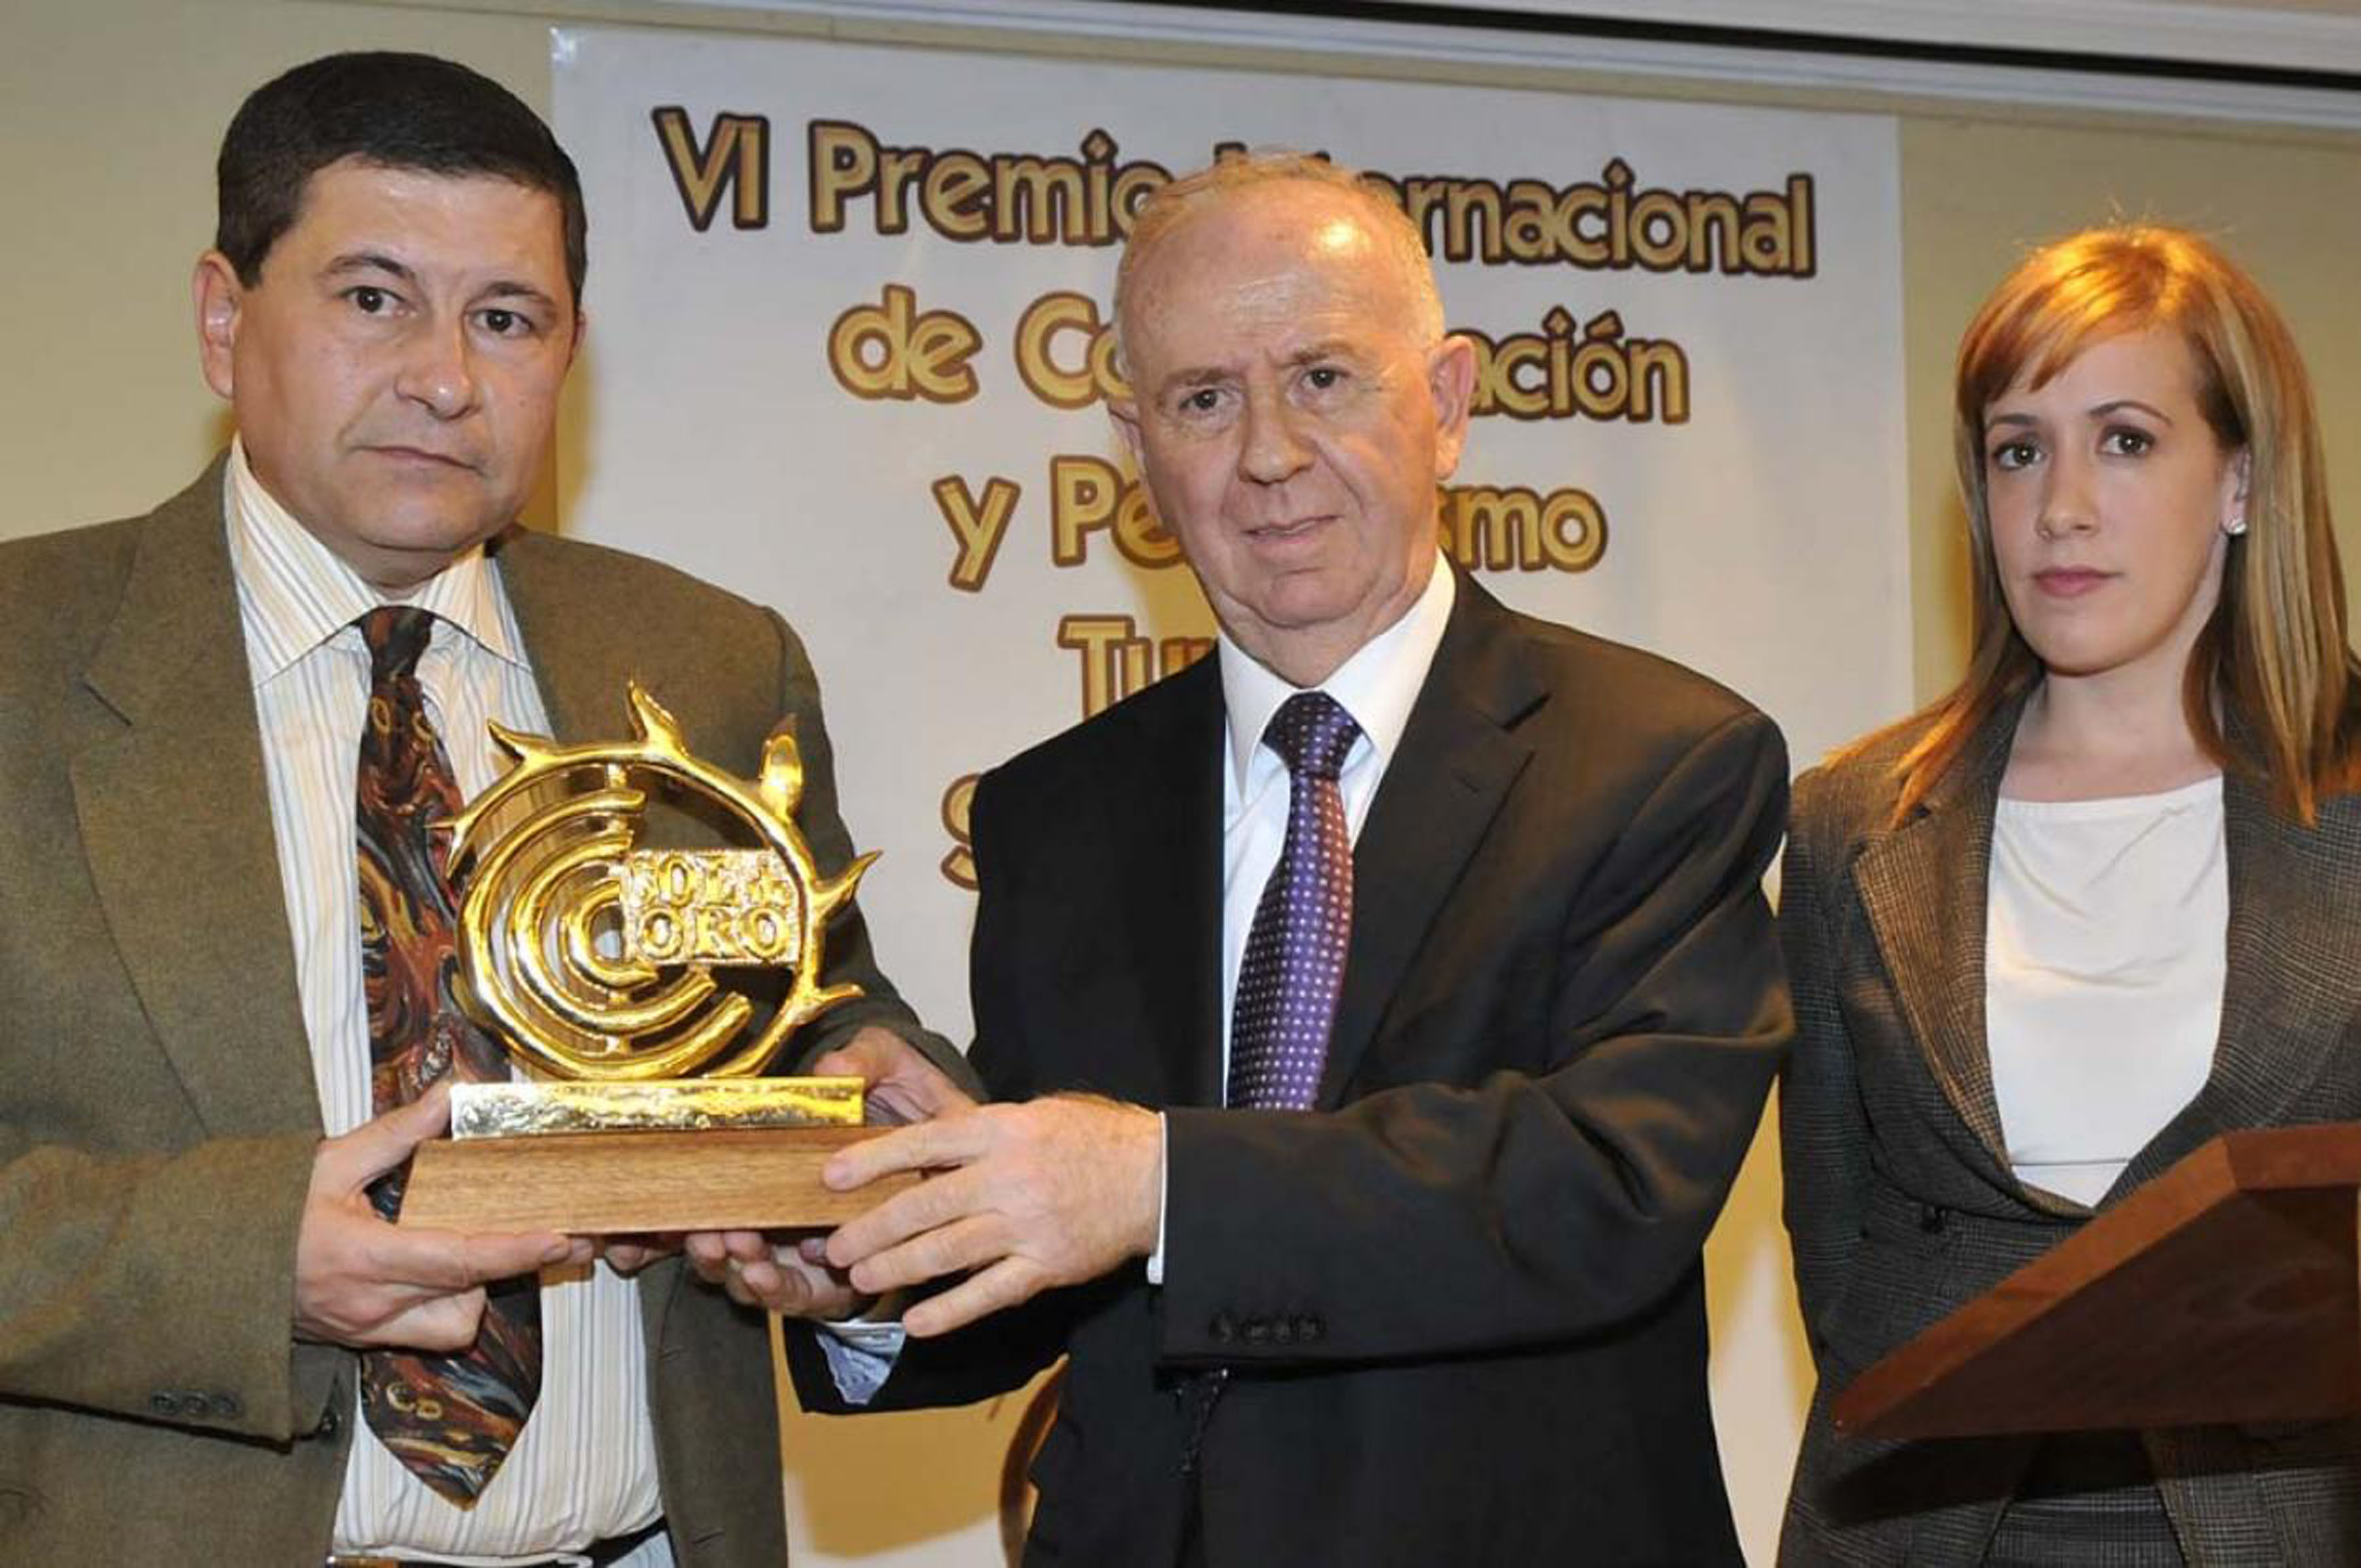 El periodista premiado, Juan Carlos Arias, junto al alcalde de Torremolinos, Pedro Fernández, y la concejala de Turismo, María José Jiménez.